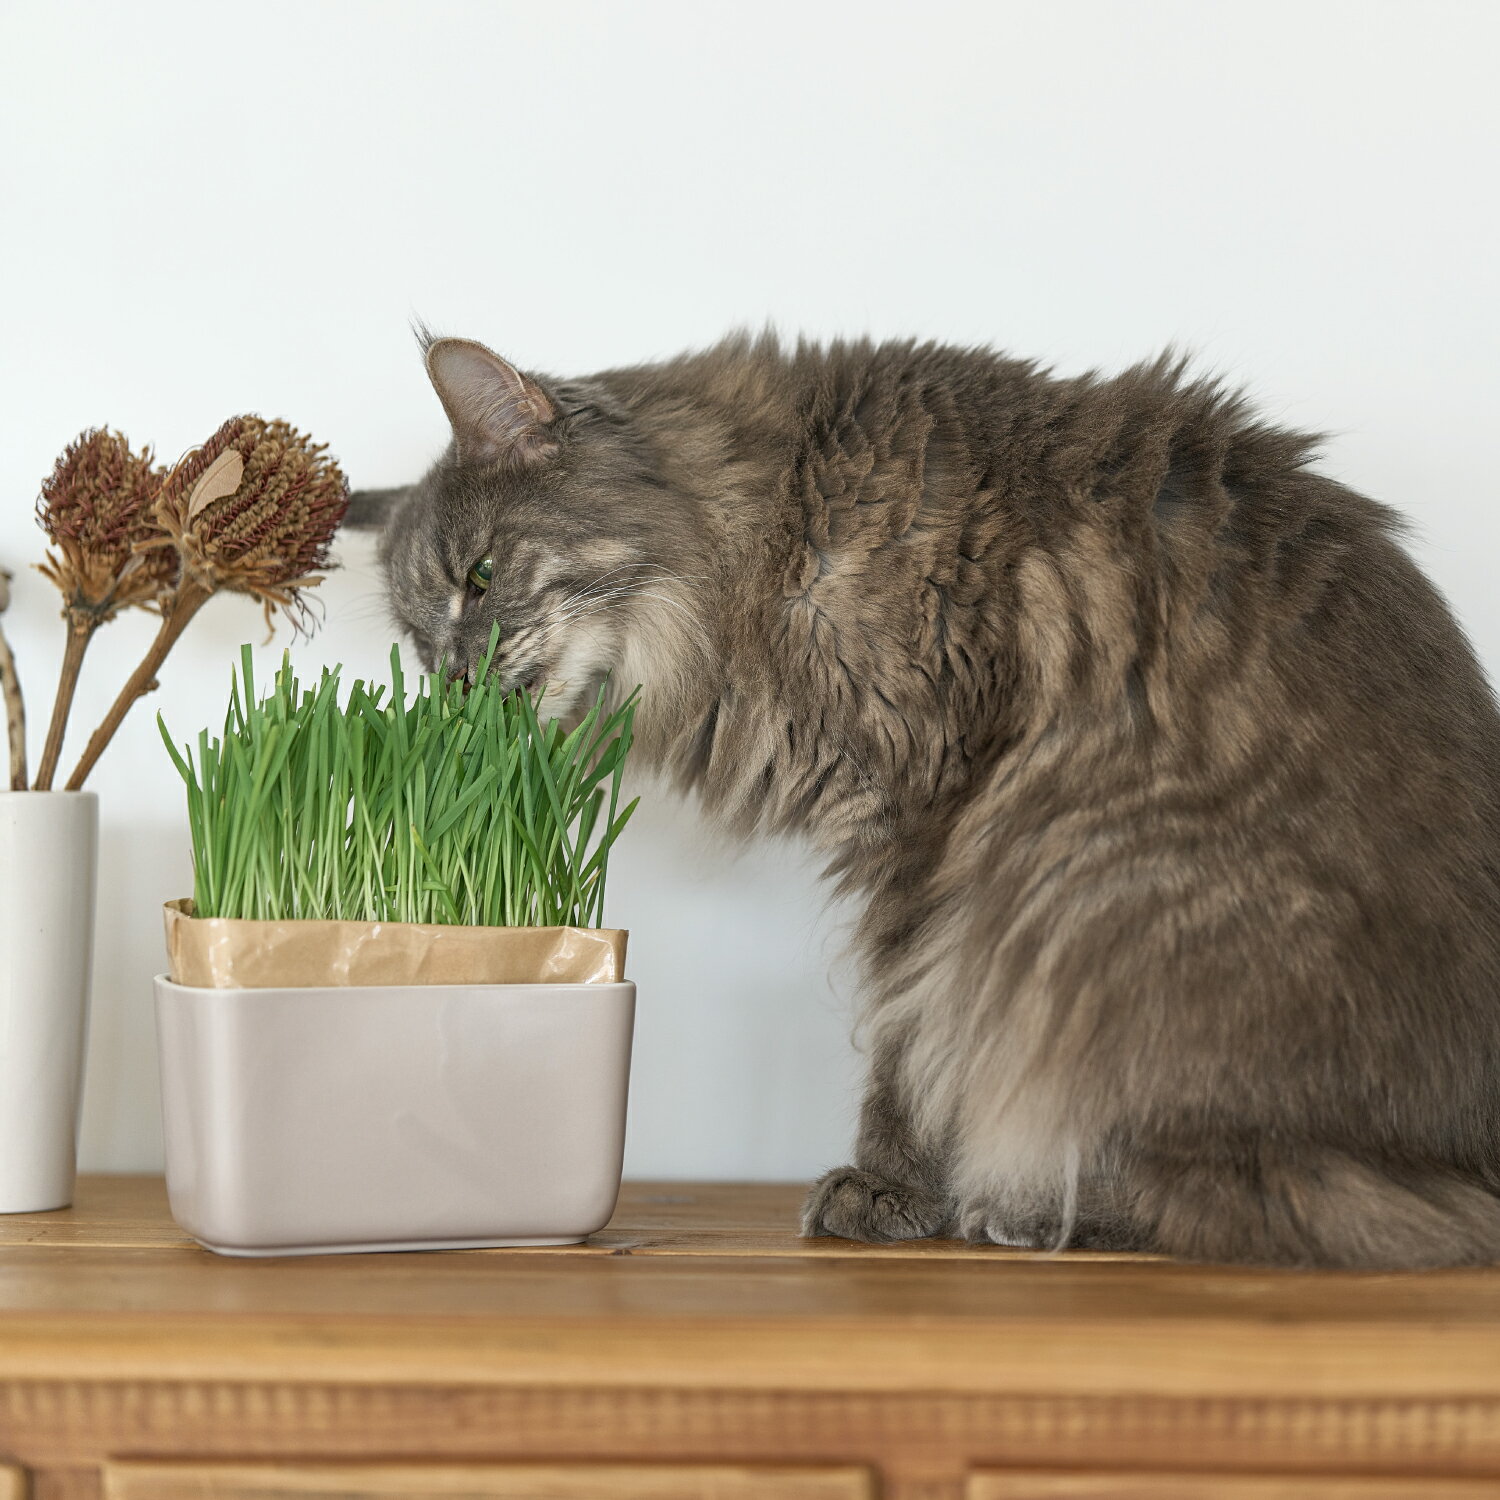 「INK にゃんベジ ポット」 ネコちゃんにとって大切な猫草を気軽に自宅で栽培できます。猫草を食べることで、毛玉の排出を促し、さらに栄養補給等のメリットがあります。育て方は簡単で水をいれて、日向に置いておくだけ。 【Point.1】 種まき不要、気楽に育てられる 土の代わりに再生粉砕パルプを使用した猫草栽培キット。種まき不要で袋を開けて水を注ぐだけなので手軽に栽培することができます。 【Point.2】 有田焼の器 付属の鉢は有田焼を採用し重みを持たせた倒れにくい形状で安定感があります。見た目もシンプルでインテリアに馴染みやすいデザインを採用。 【Point.3】 取り替え、片付け簡単 リフィルは燃えるゴミとして処理できるので使用後にリフィルを容器からはずし、袋の口を折り畳んで捨てるだけなのでお手入れ楽々！